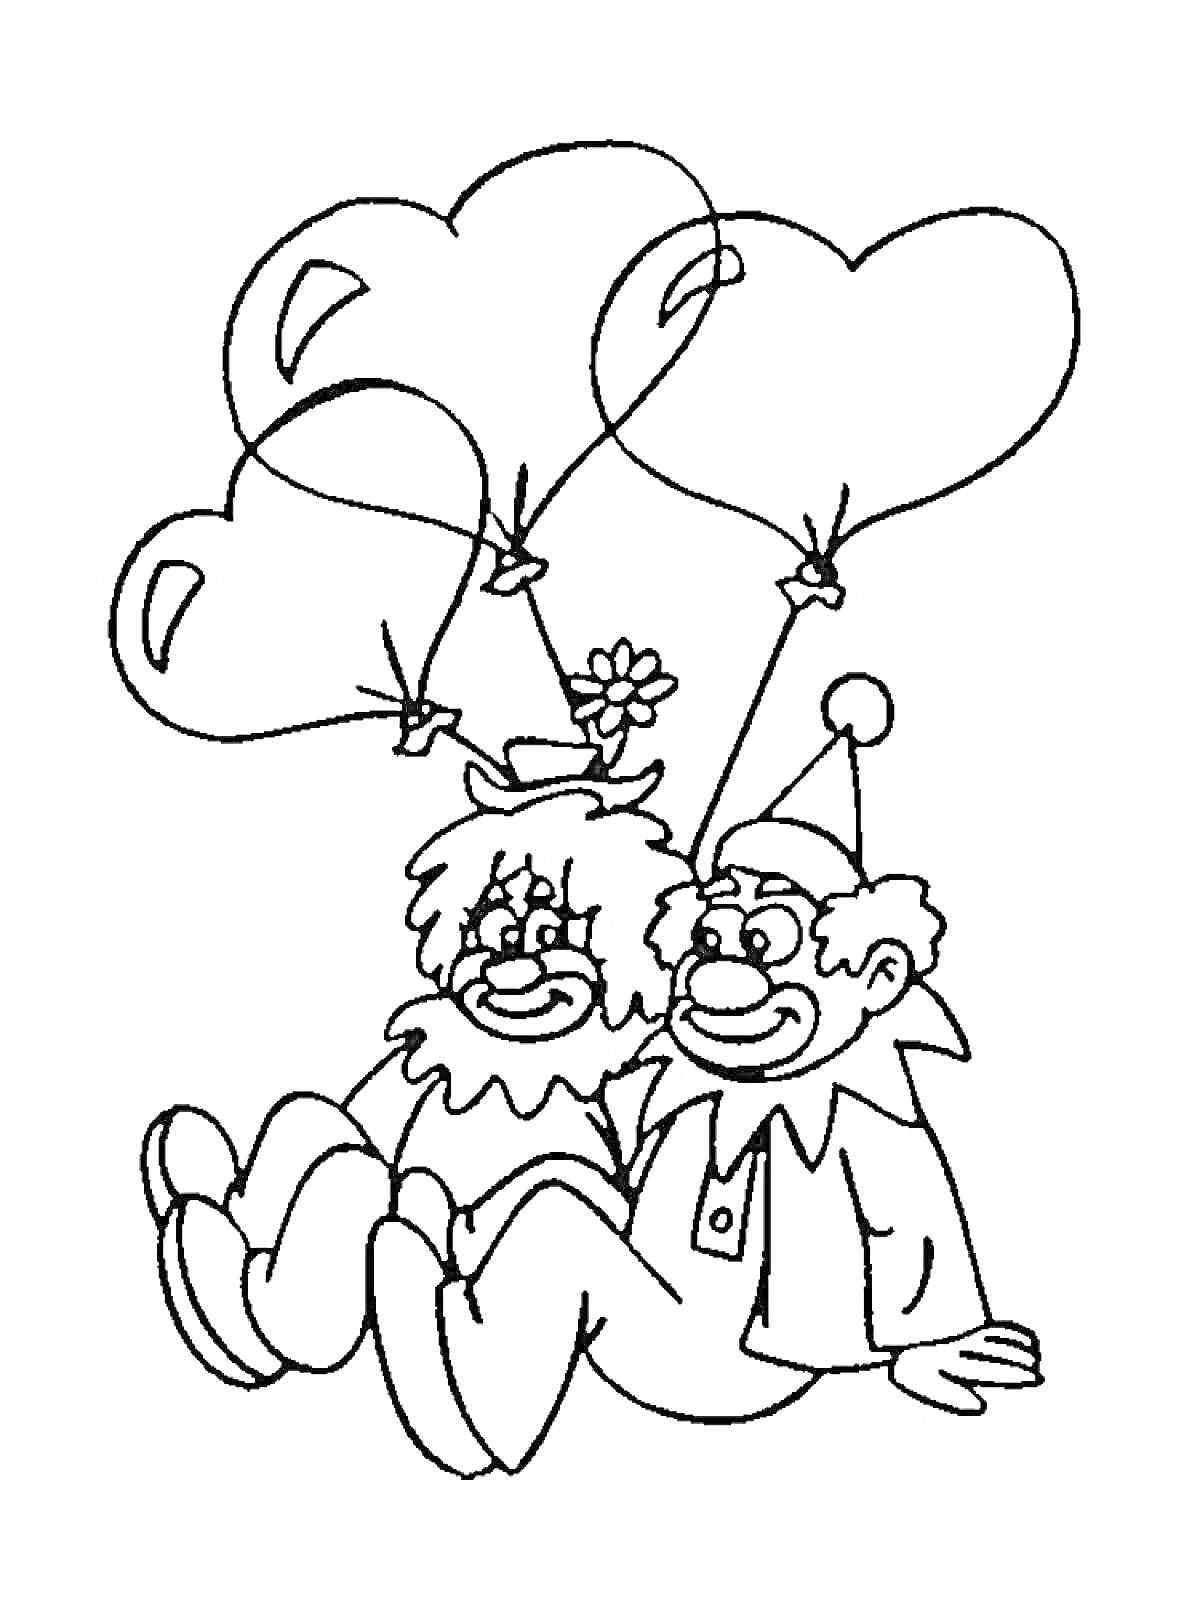 Два клоуна с воздушными шарами в форме сердца, сидящие рядом